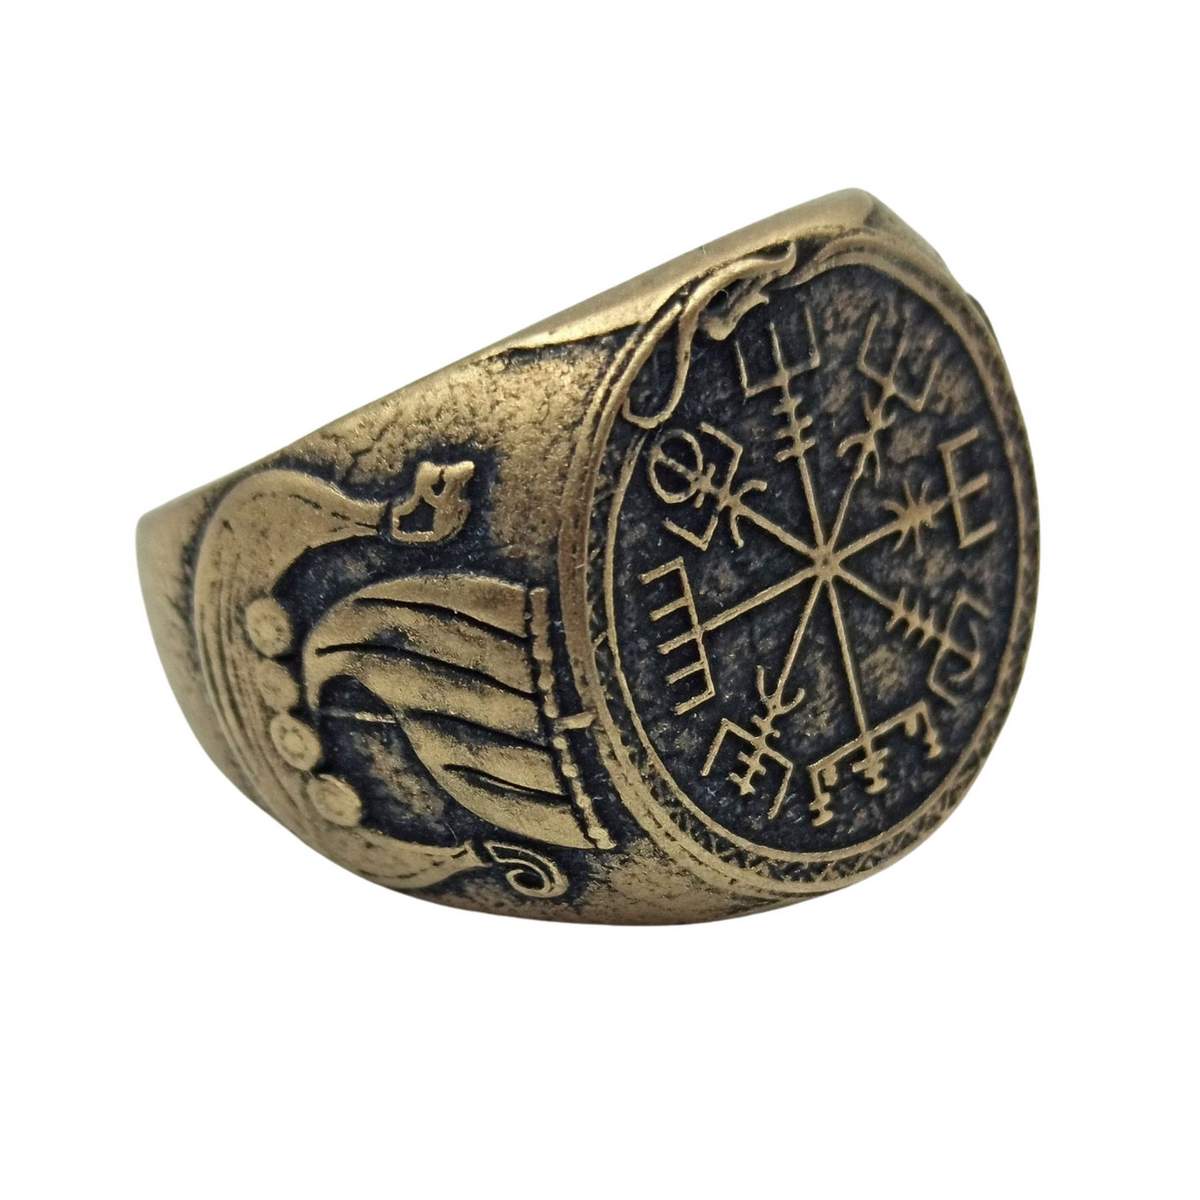 Vegvisir bronze signet ring